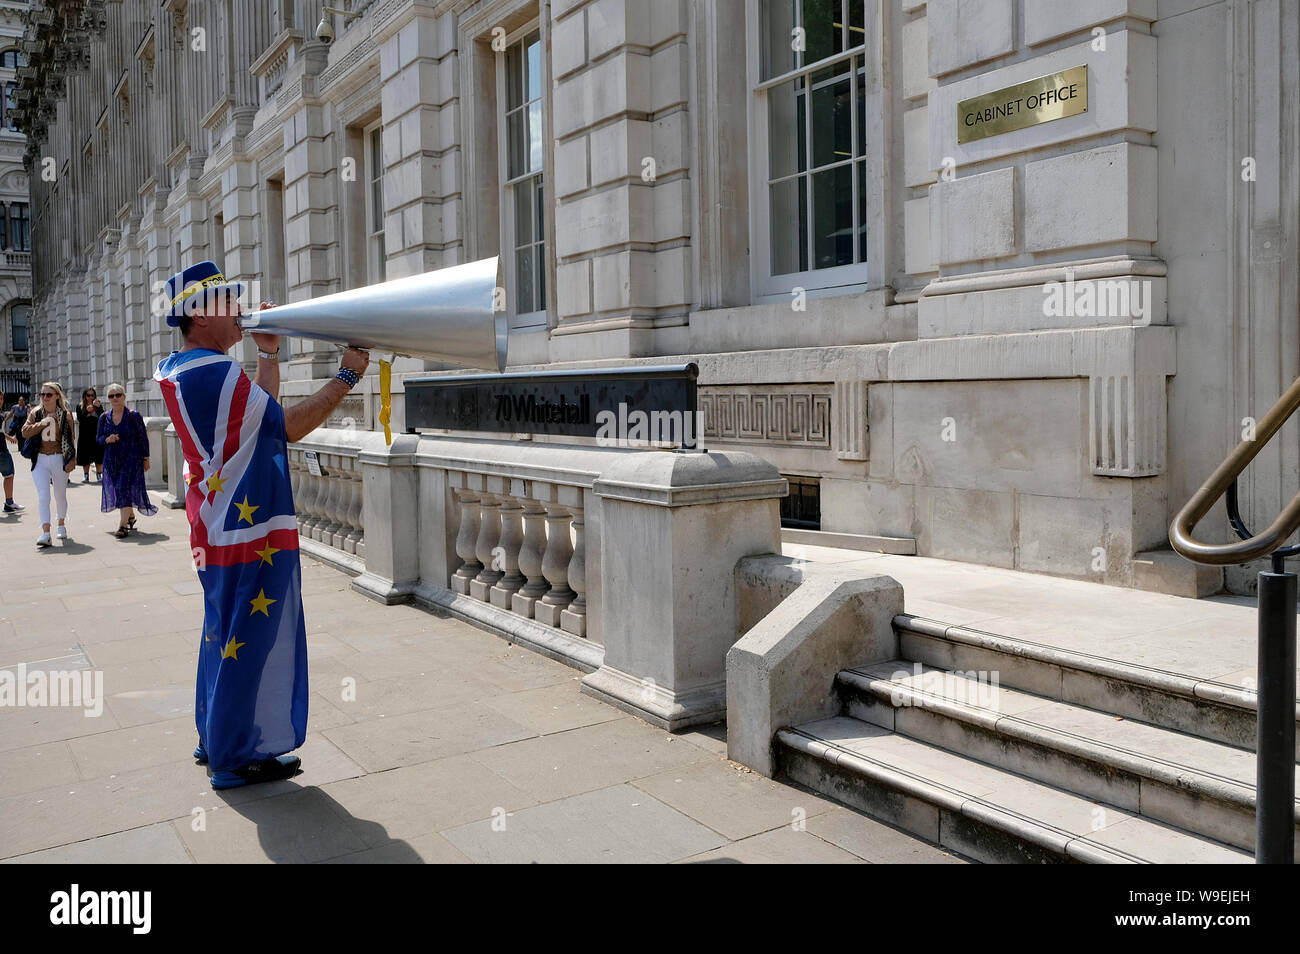 Steve Bray slogans chants à l'extérieur de l'armoire bureau à Londres au cours de la protestation anti brexit.Les manifestants se sont réunis à l'extérieur du bureau du Cabinet à la demande d'une révocation de l'article 50 et pour arrêter Brexit. Banque D'Images